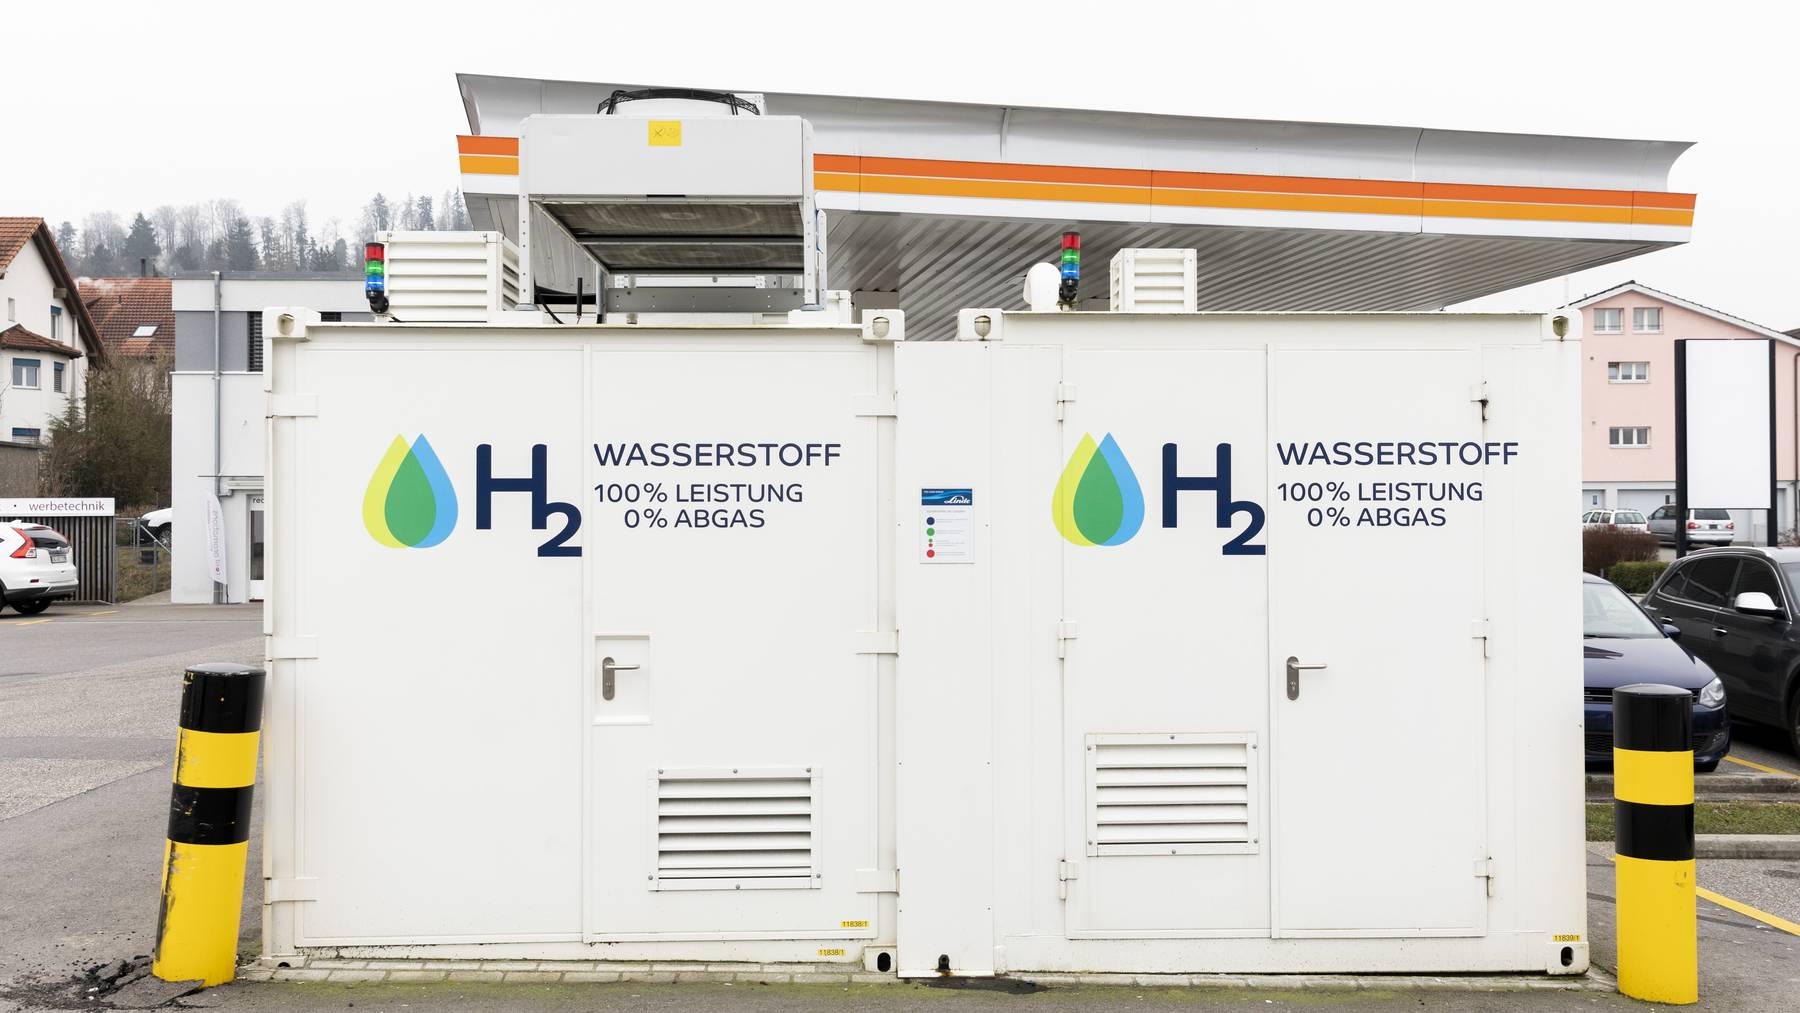 Schweiz: Für Wasserstoff-Tankstellen nehmen die Bauauflagen zu